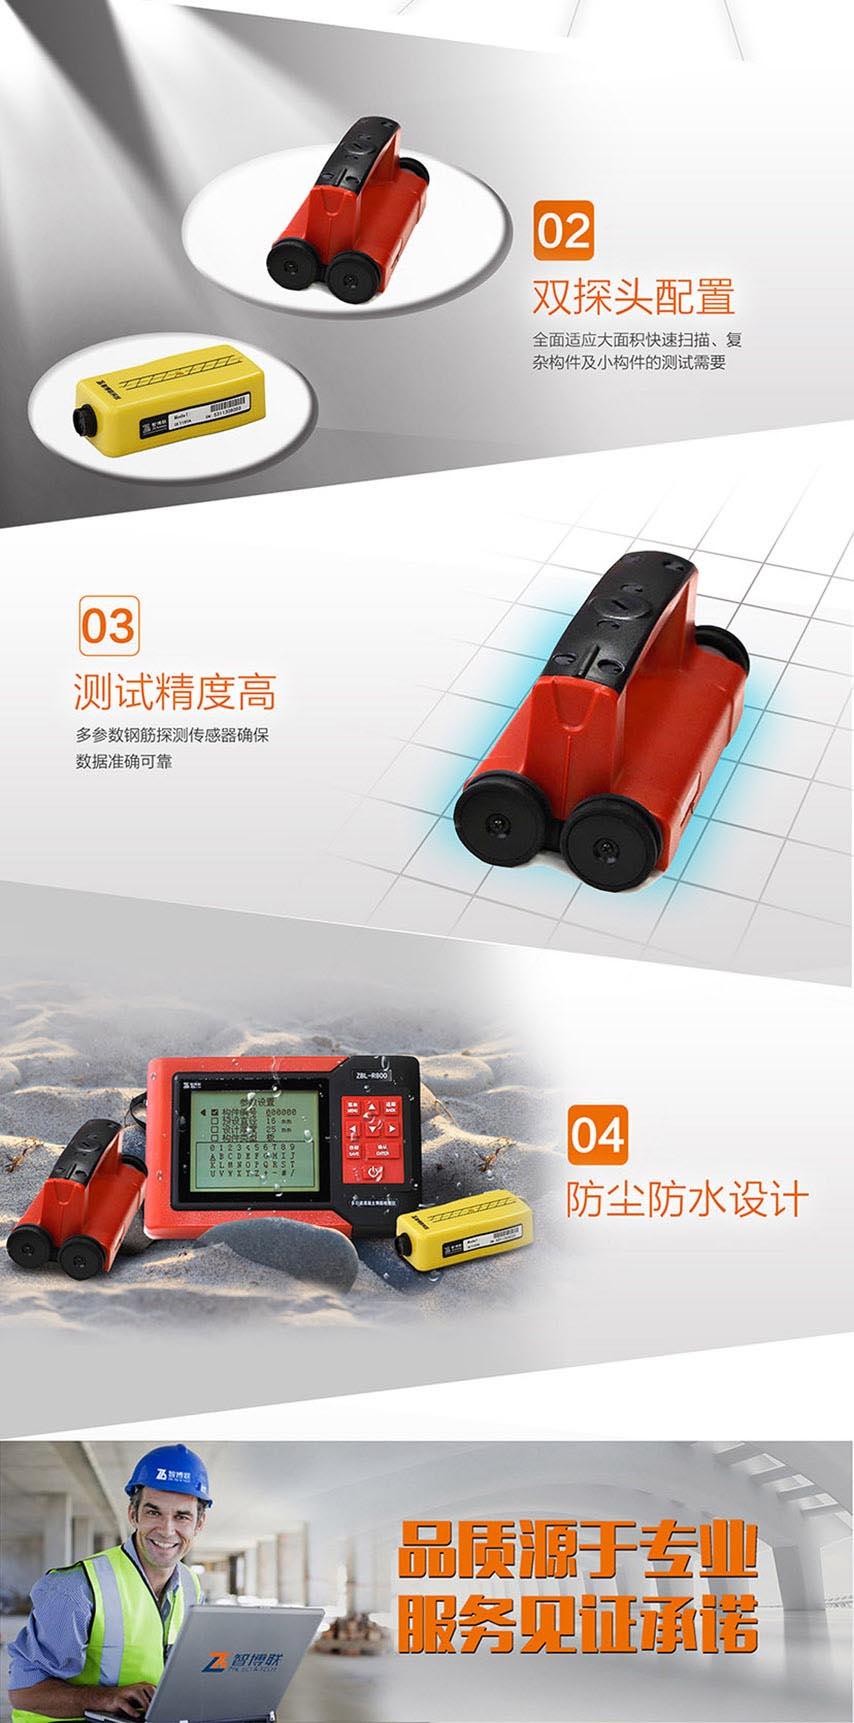 北京半岛bd体育ZBL-R800多功能混凝土钢筋检测仪2